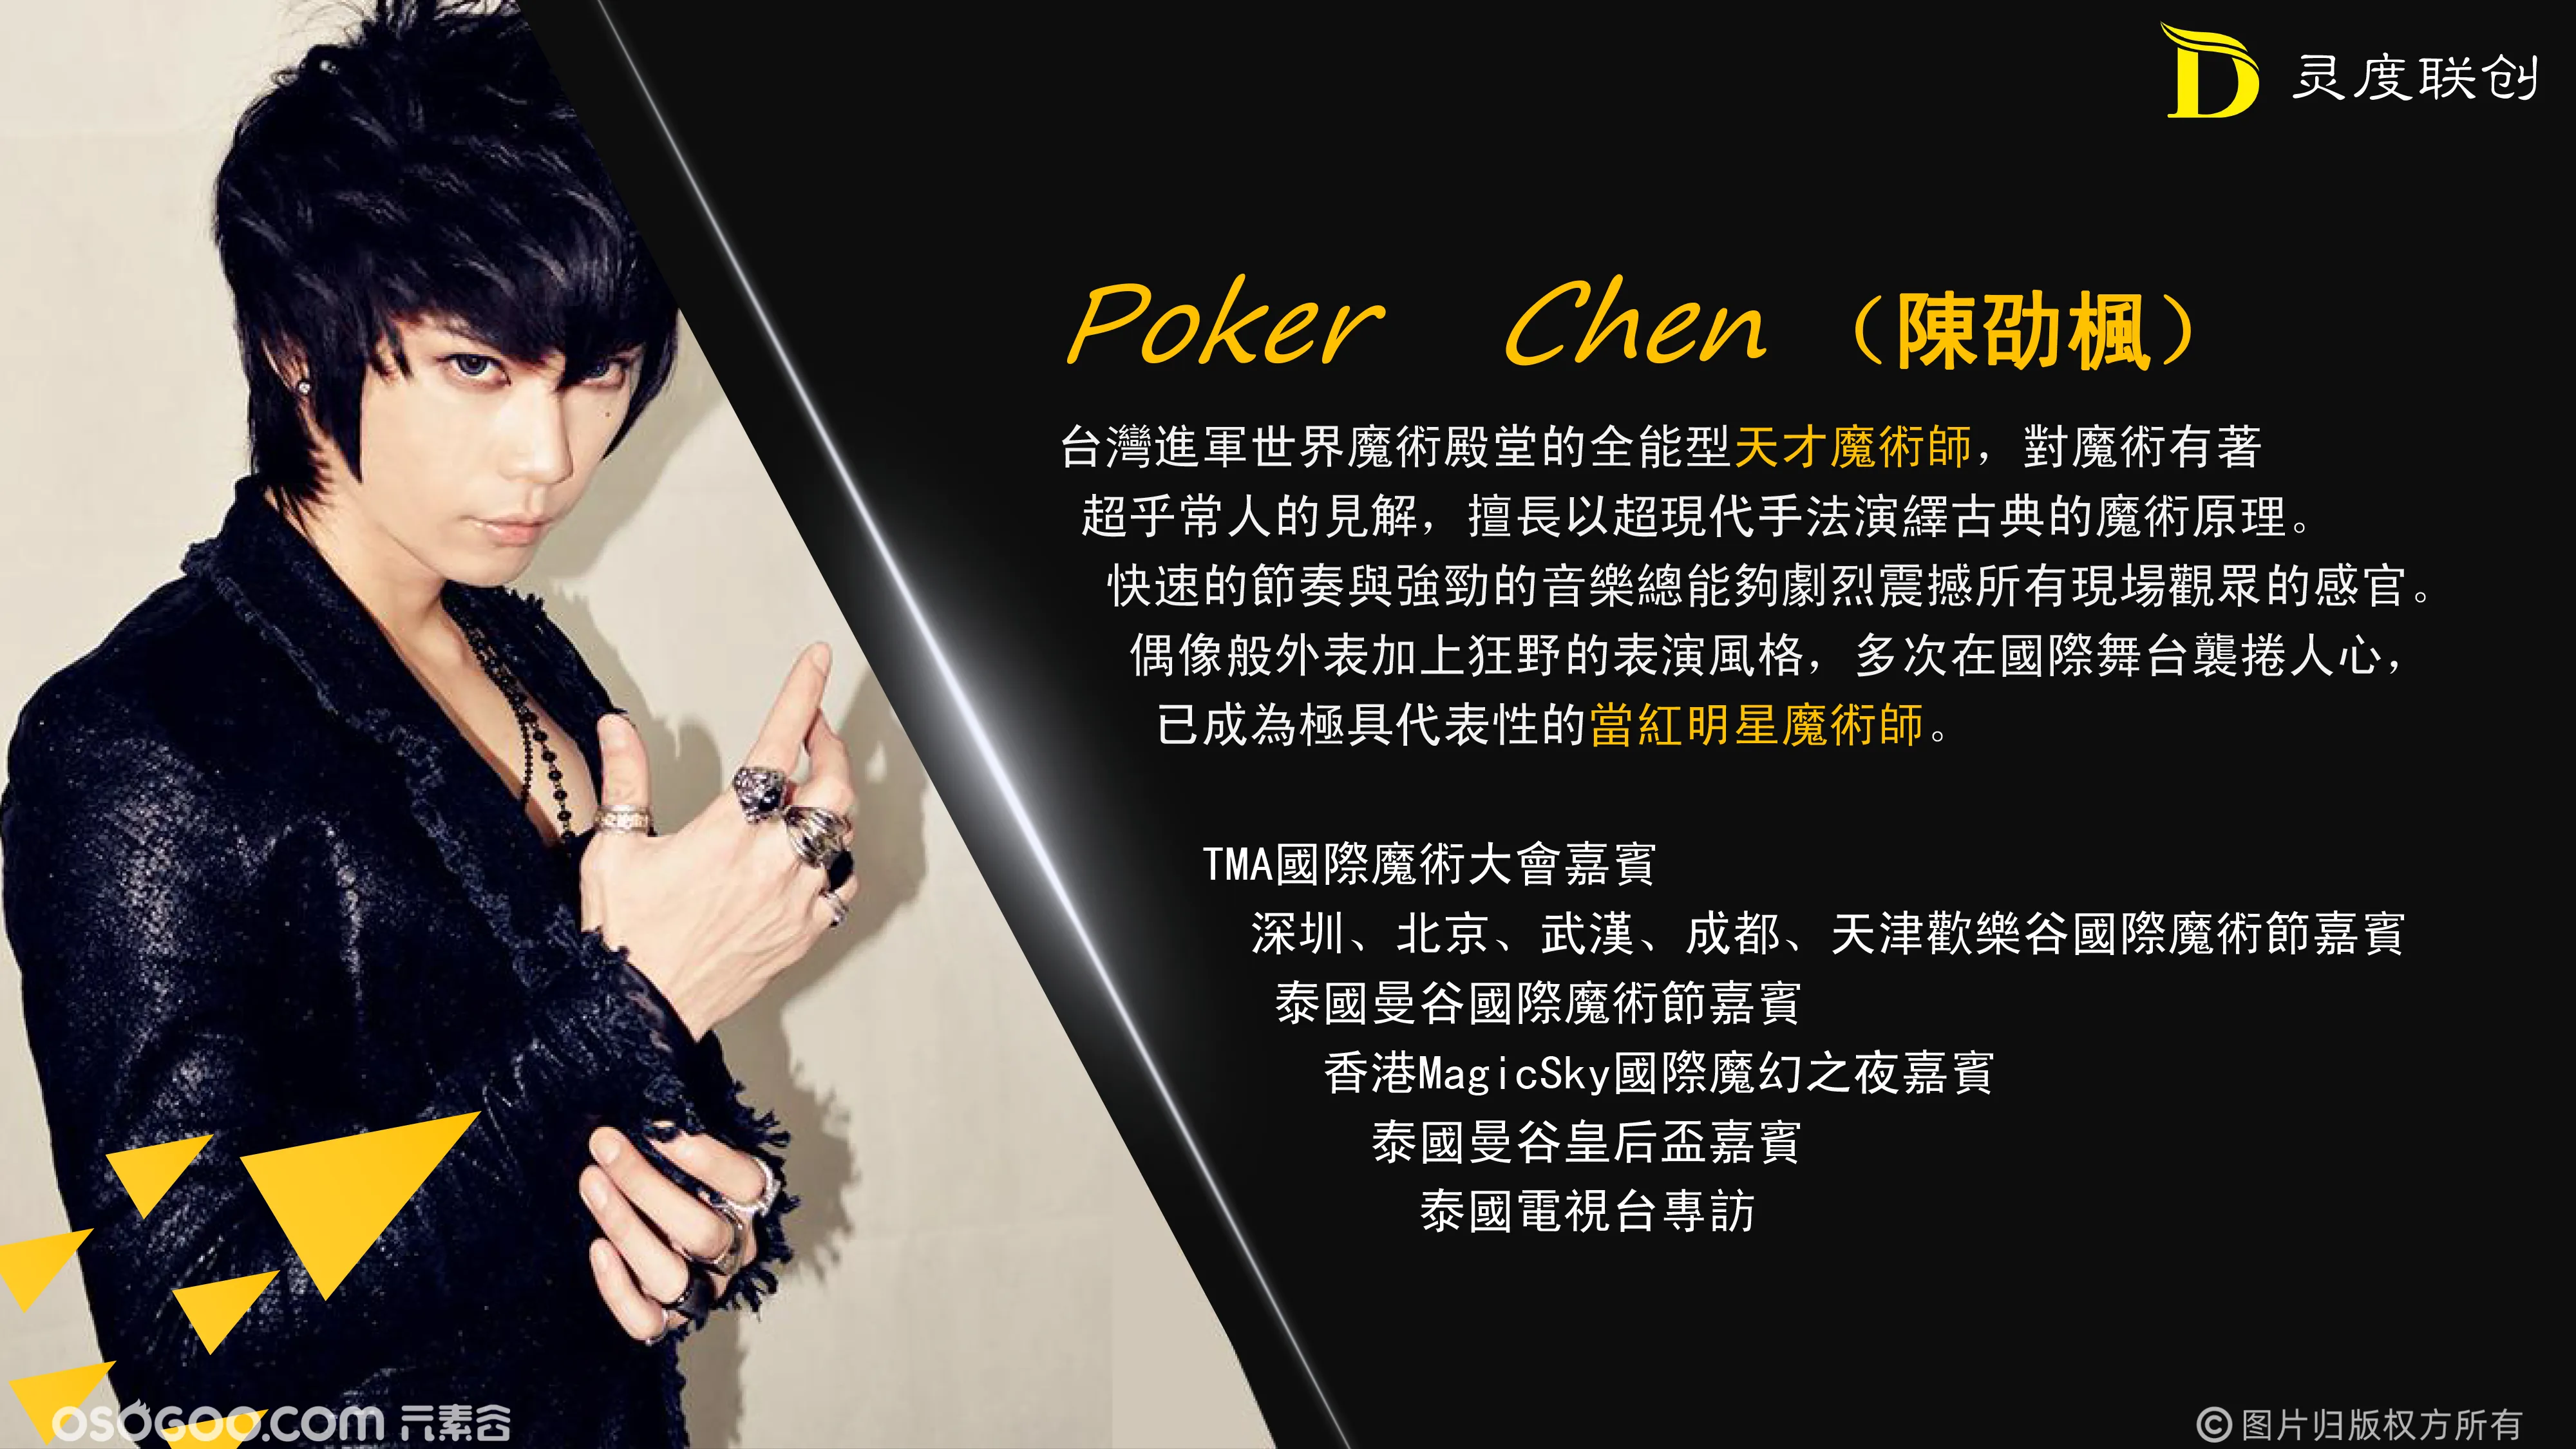 中国台湾魔术明星PokerChen《魔法梦之旅》大型主题魔术